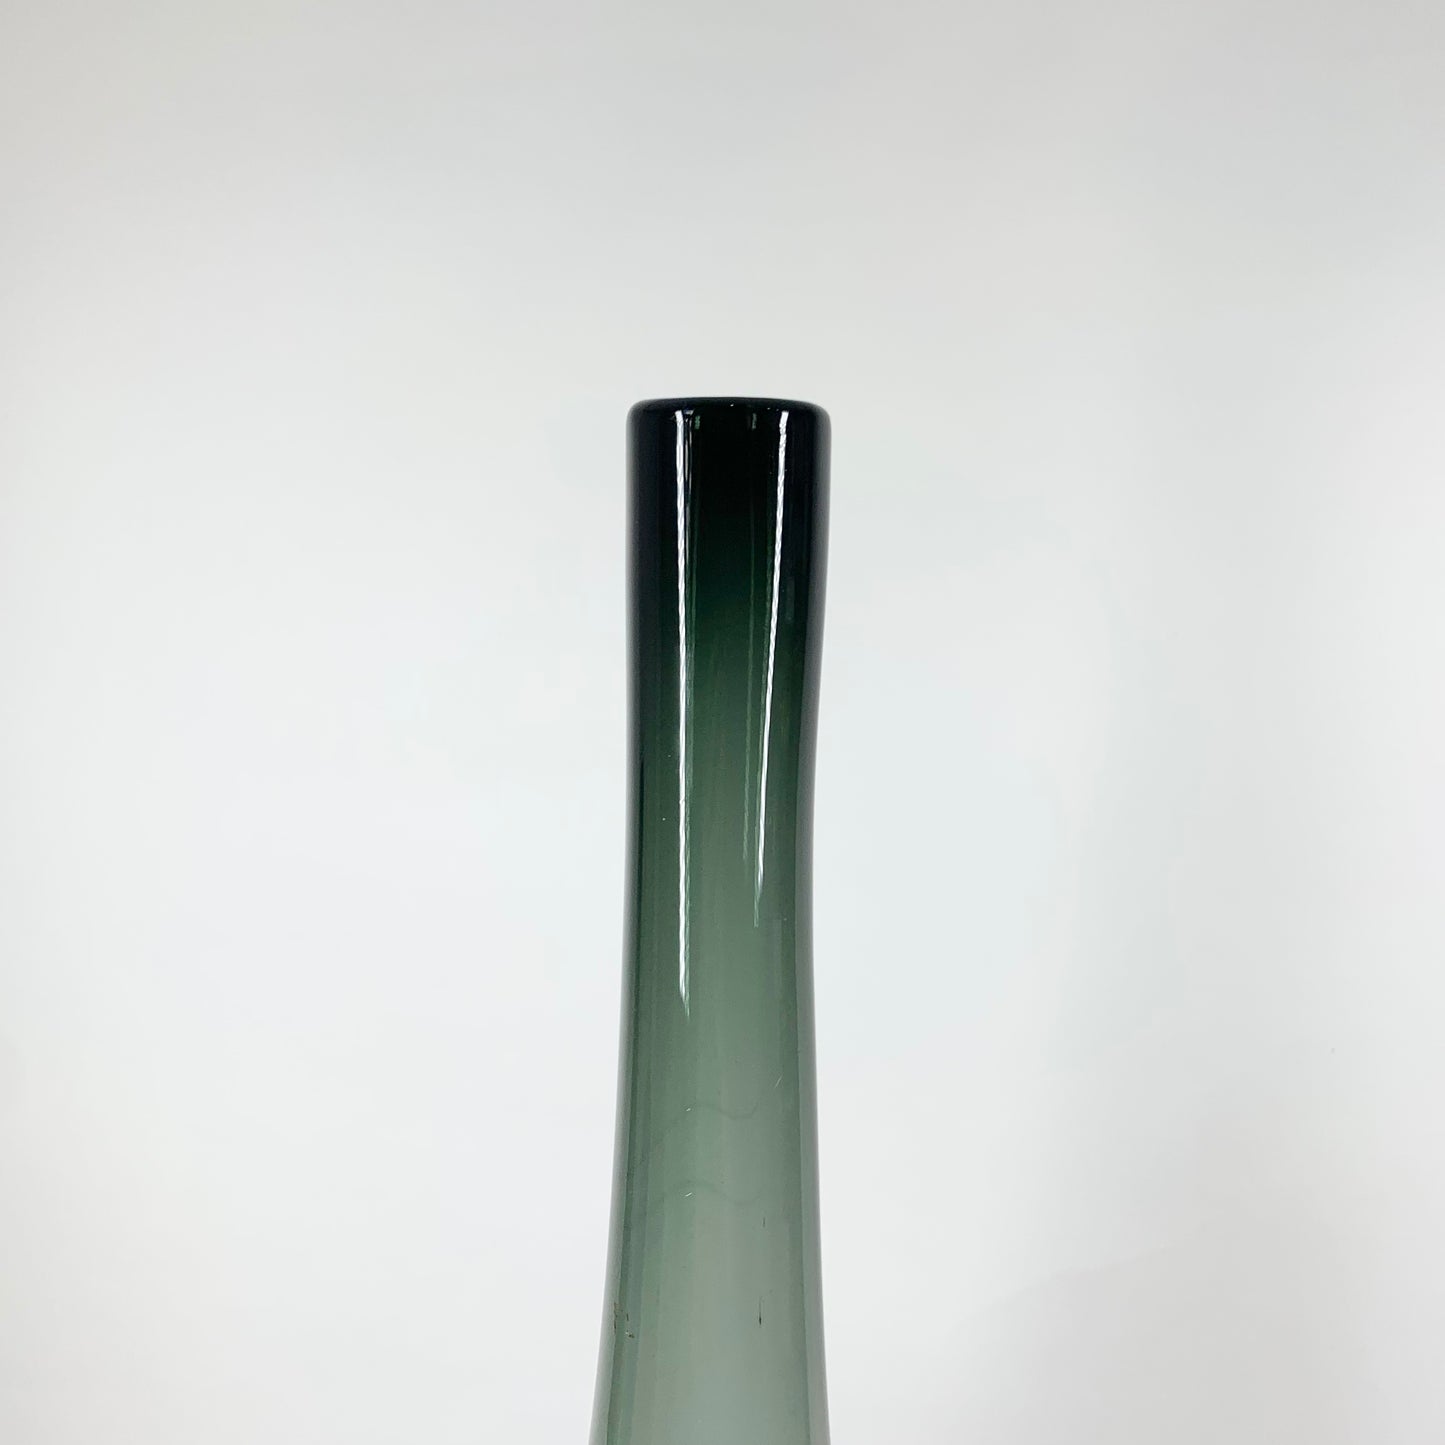 Retro tall grey glass long neck bottle vase